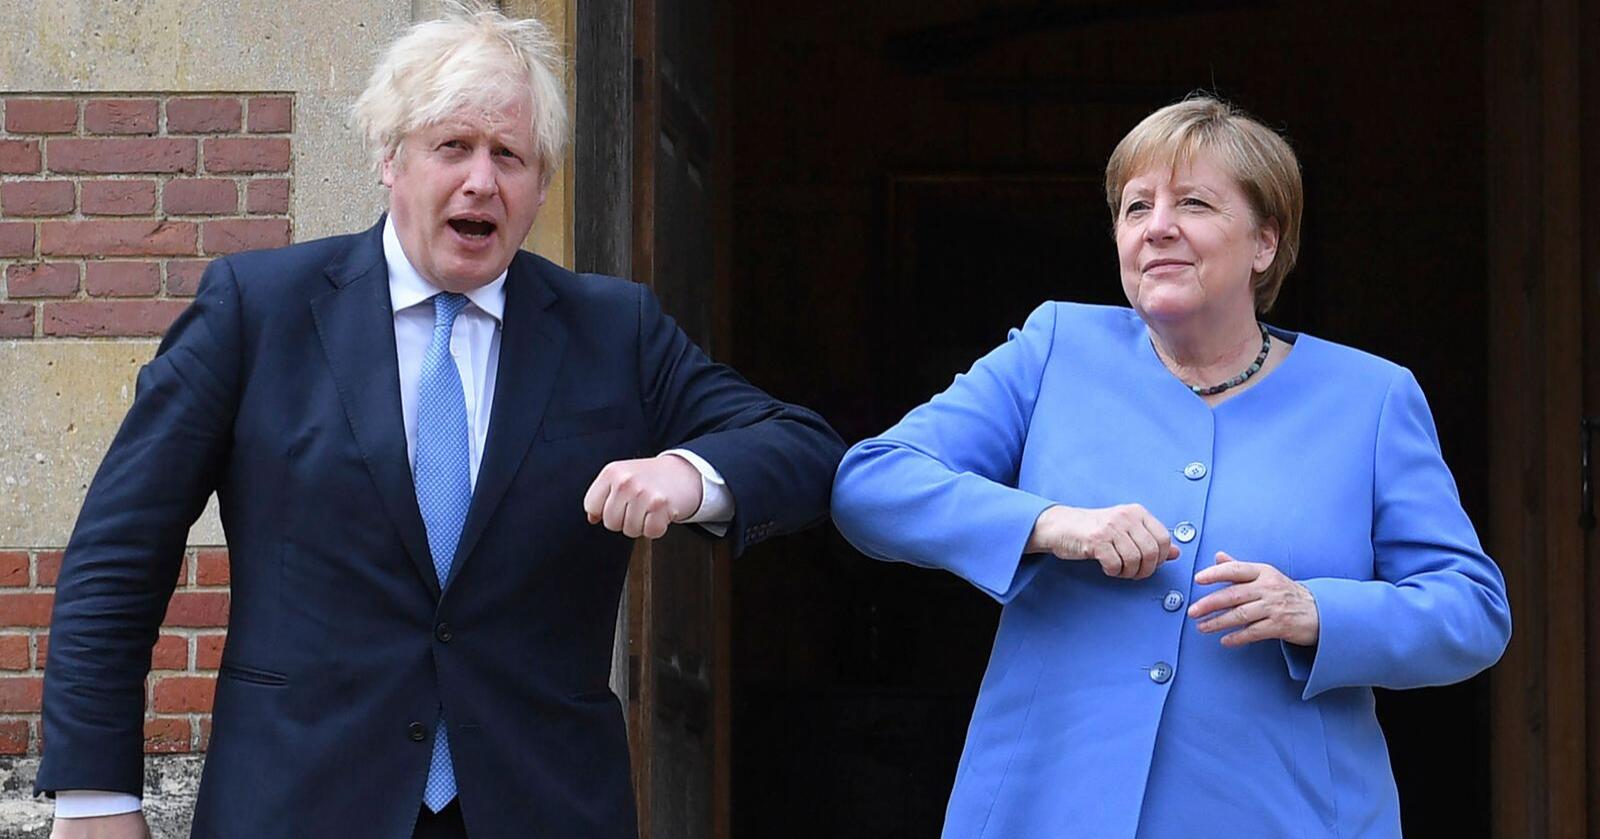 Boris Johnson og Angela Merkel hilste på koronavennlig vis med albuene da de møttes fredag. Foto: Stefan Rousseau / Pool Photo via AP / NTB